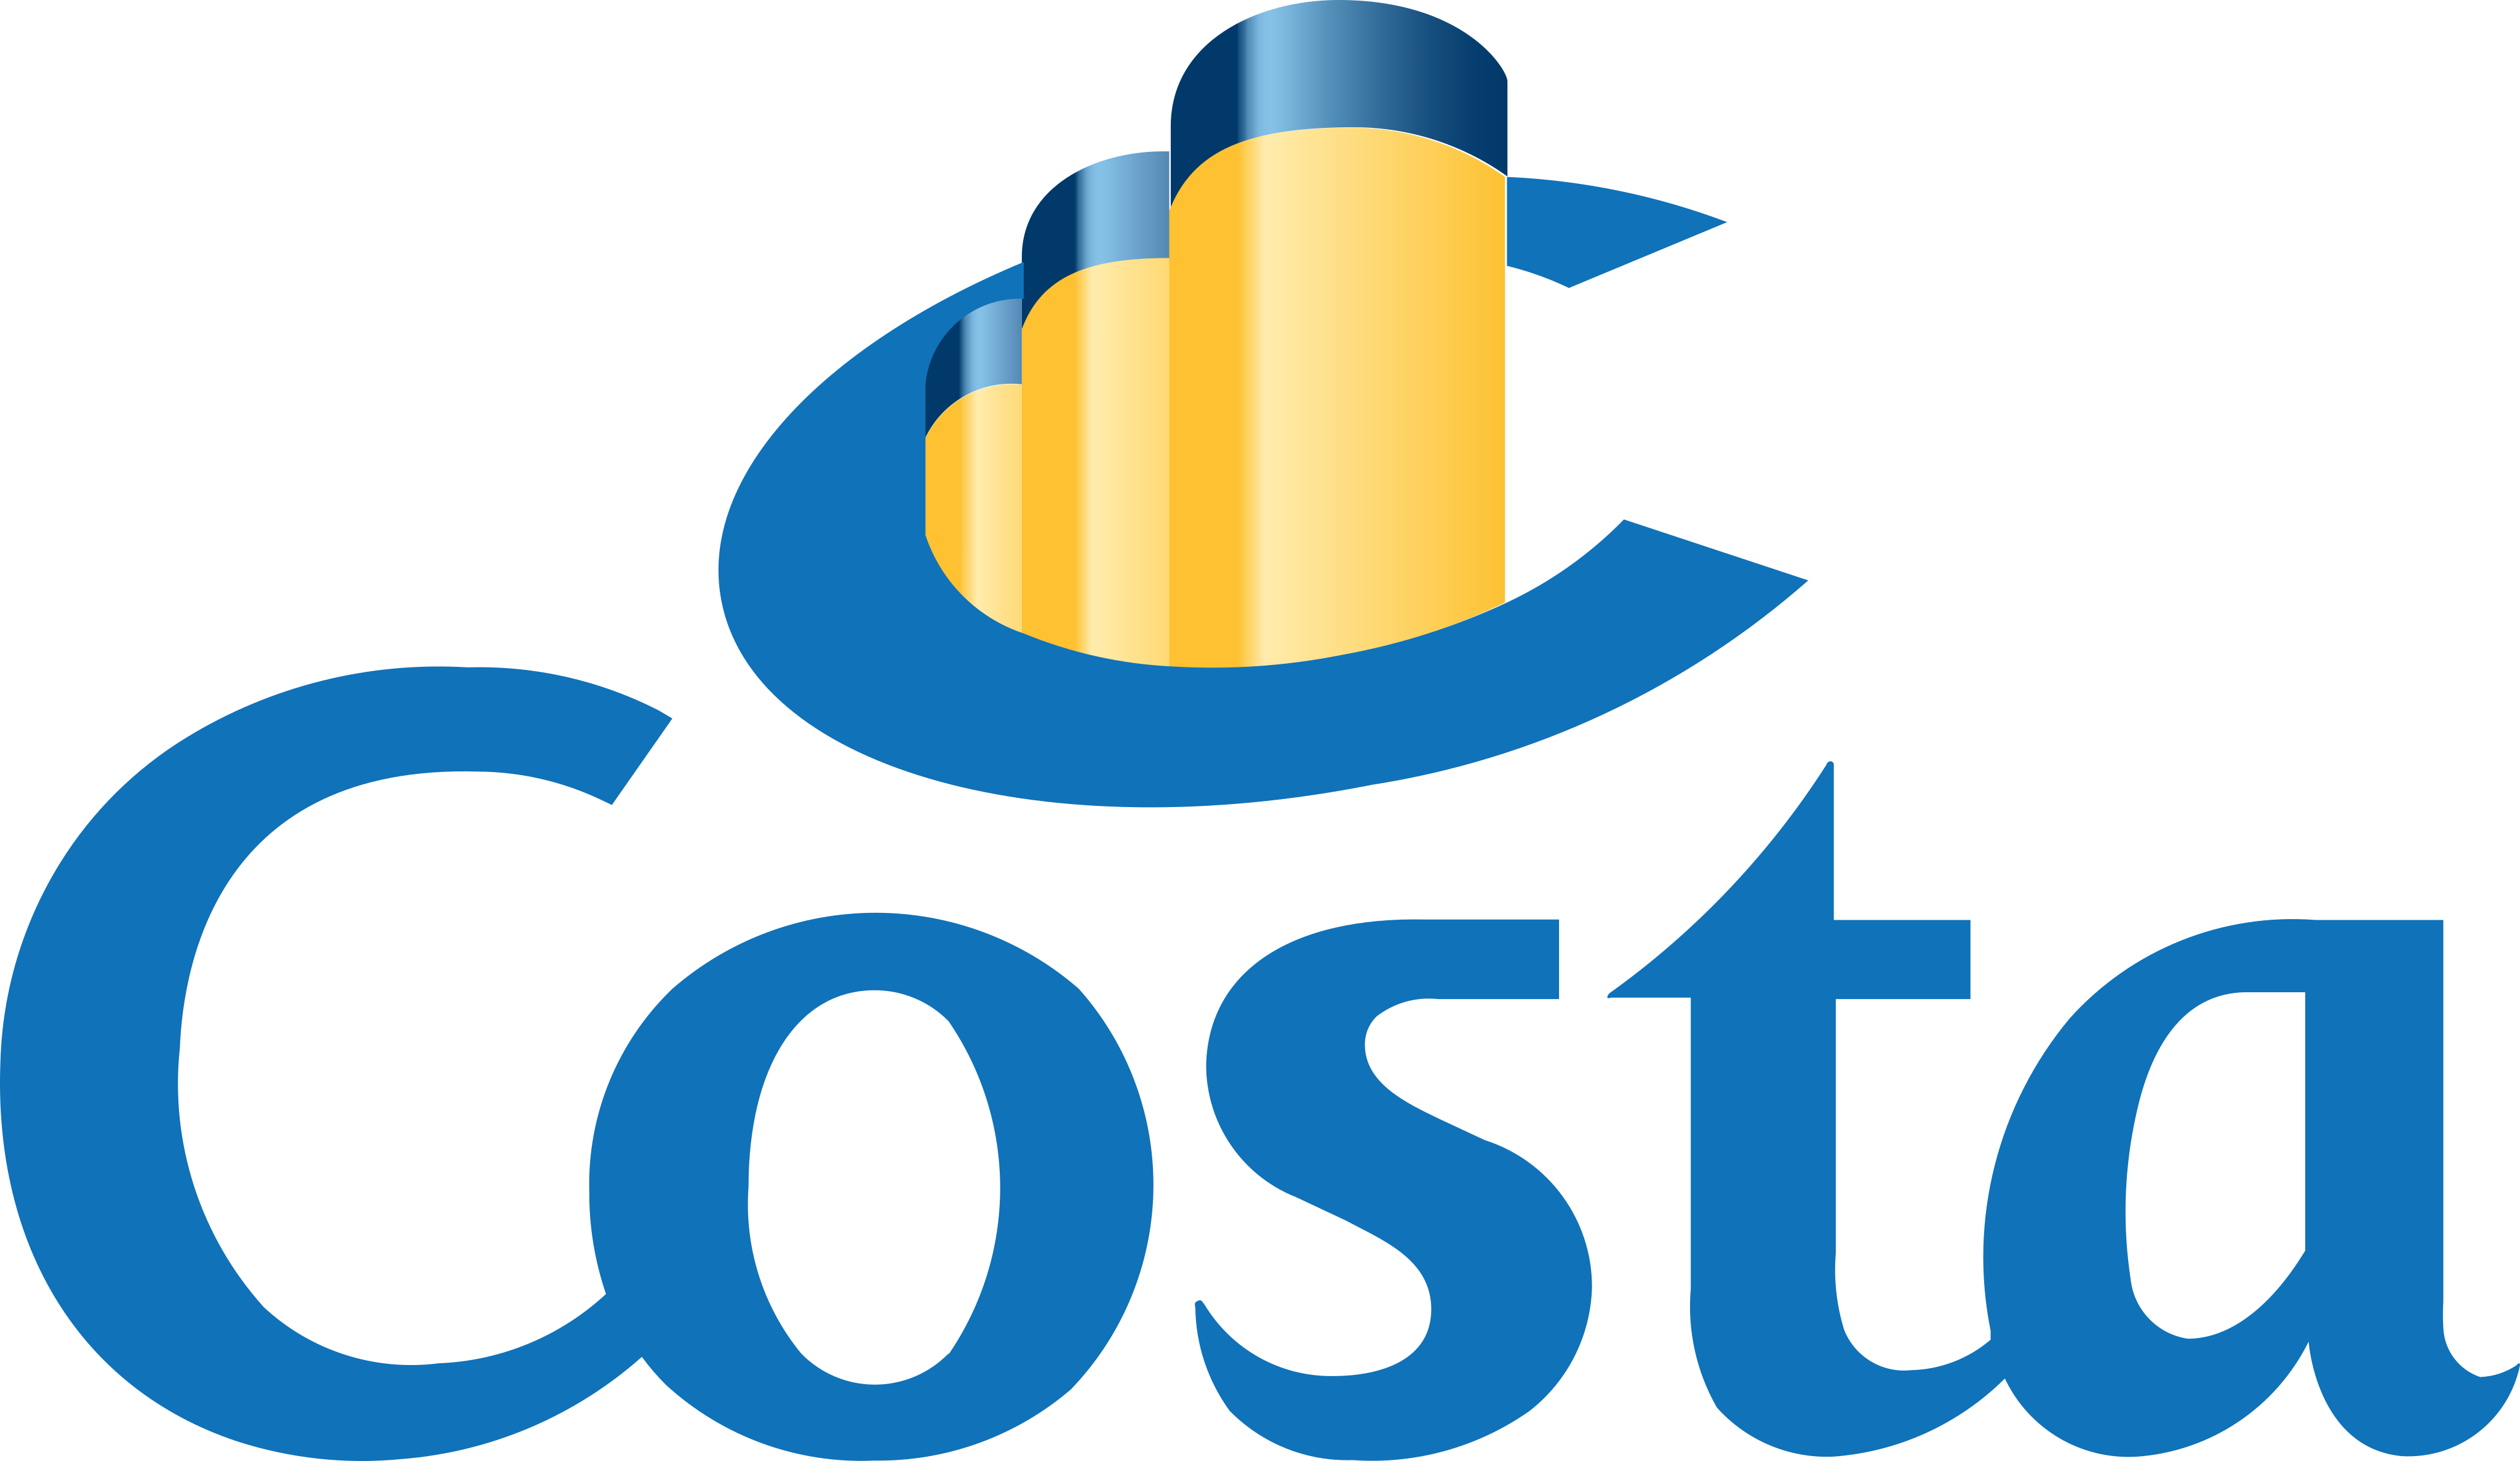 Costa's company logo